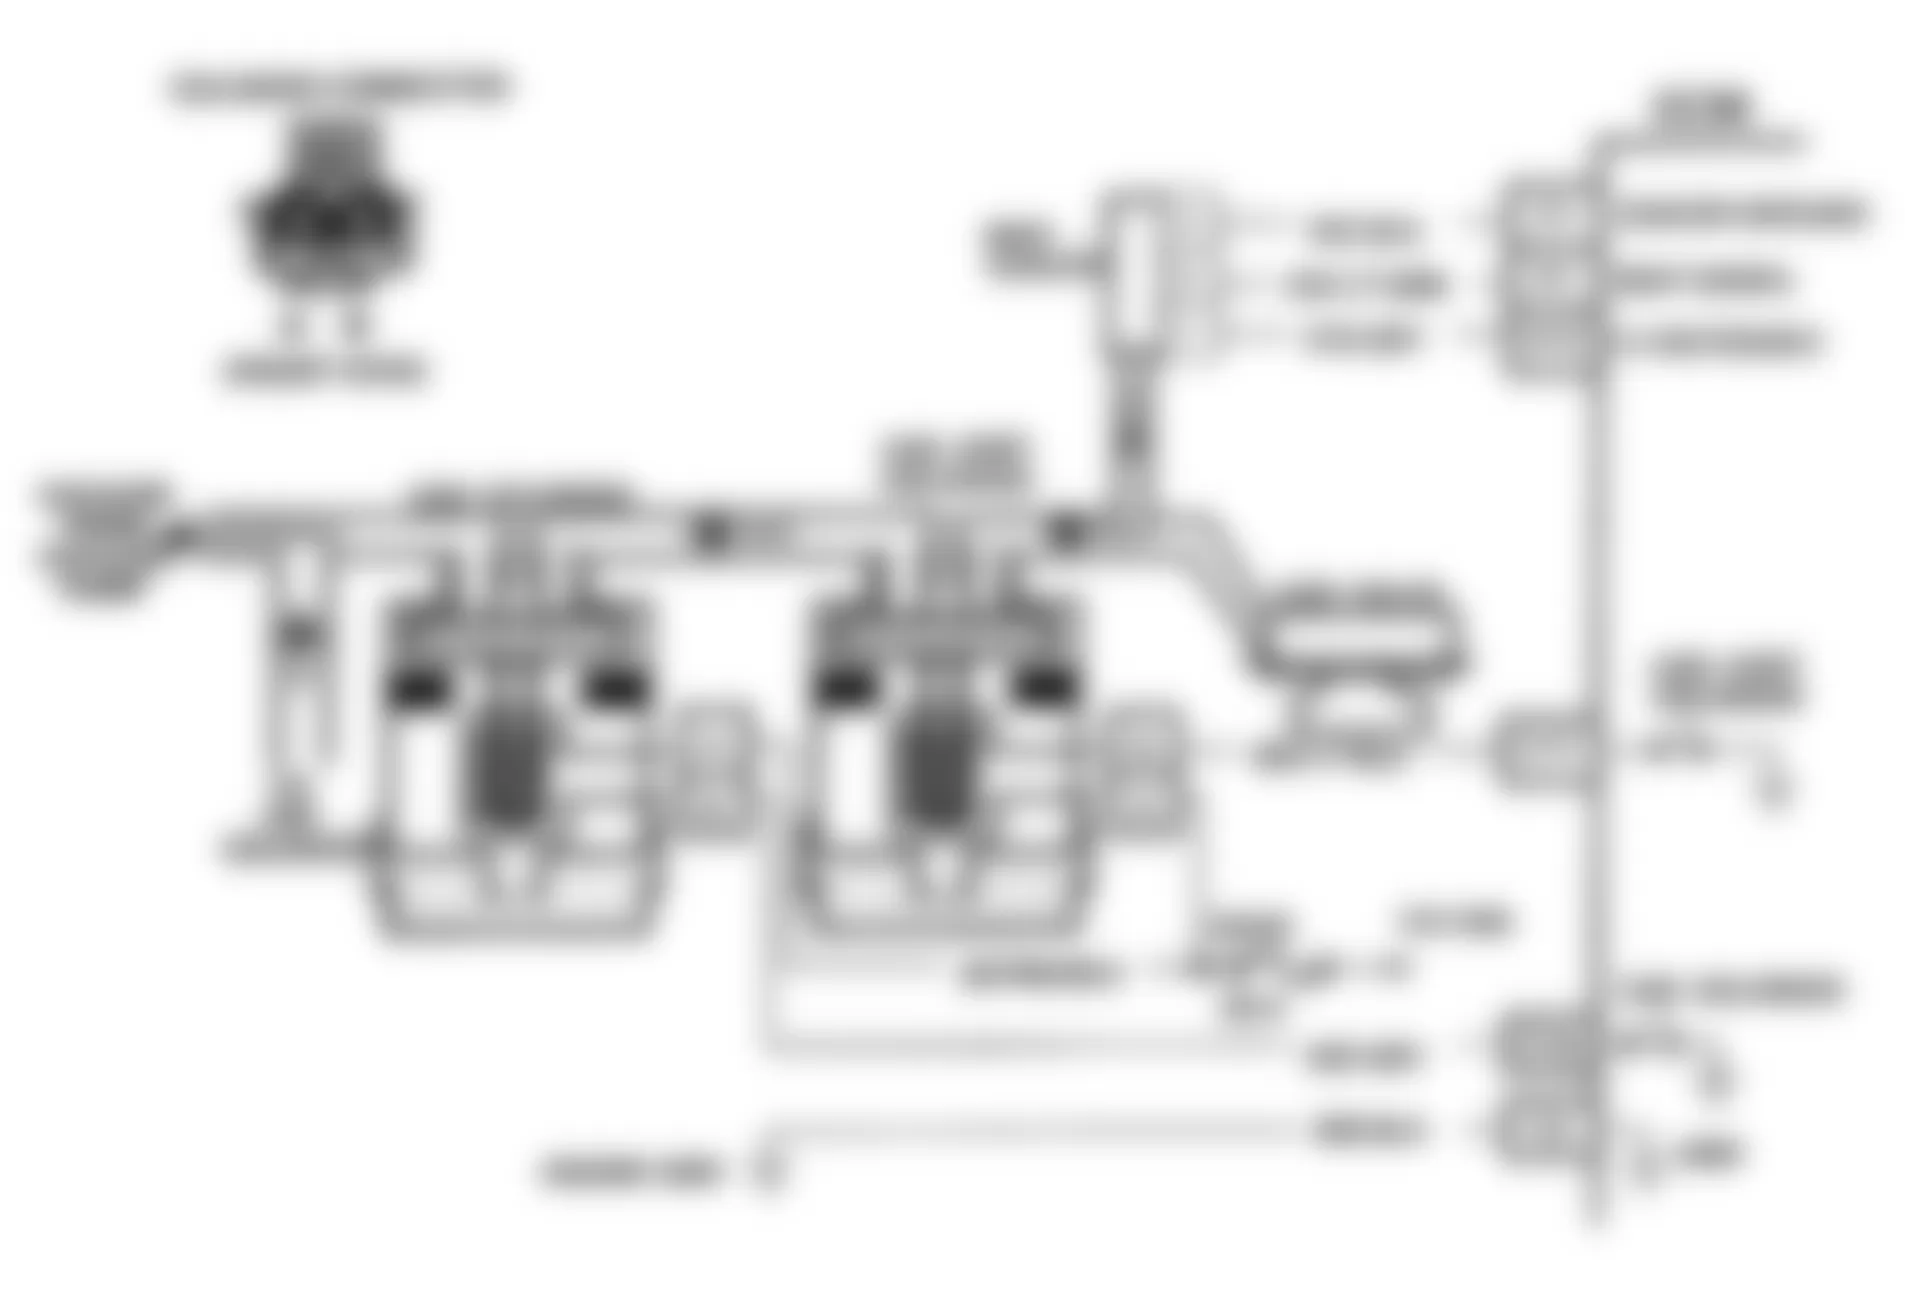 GMC Magnavan G3500 1991 - Component Locations -  Code 32 Schematic - EGR Circuit Loop Error